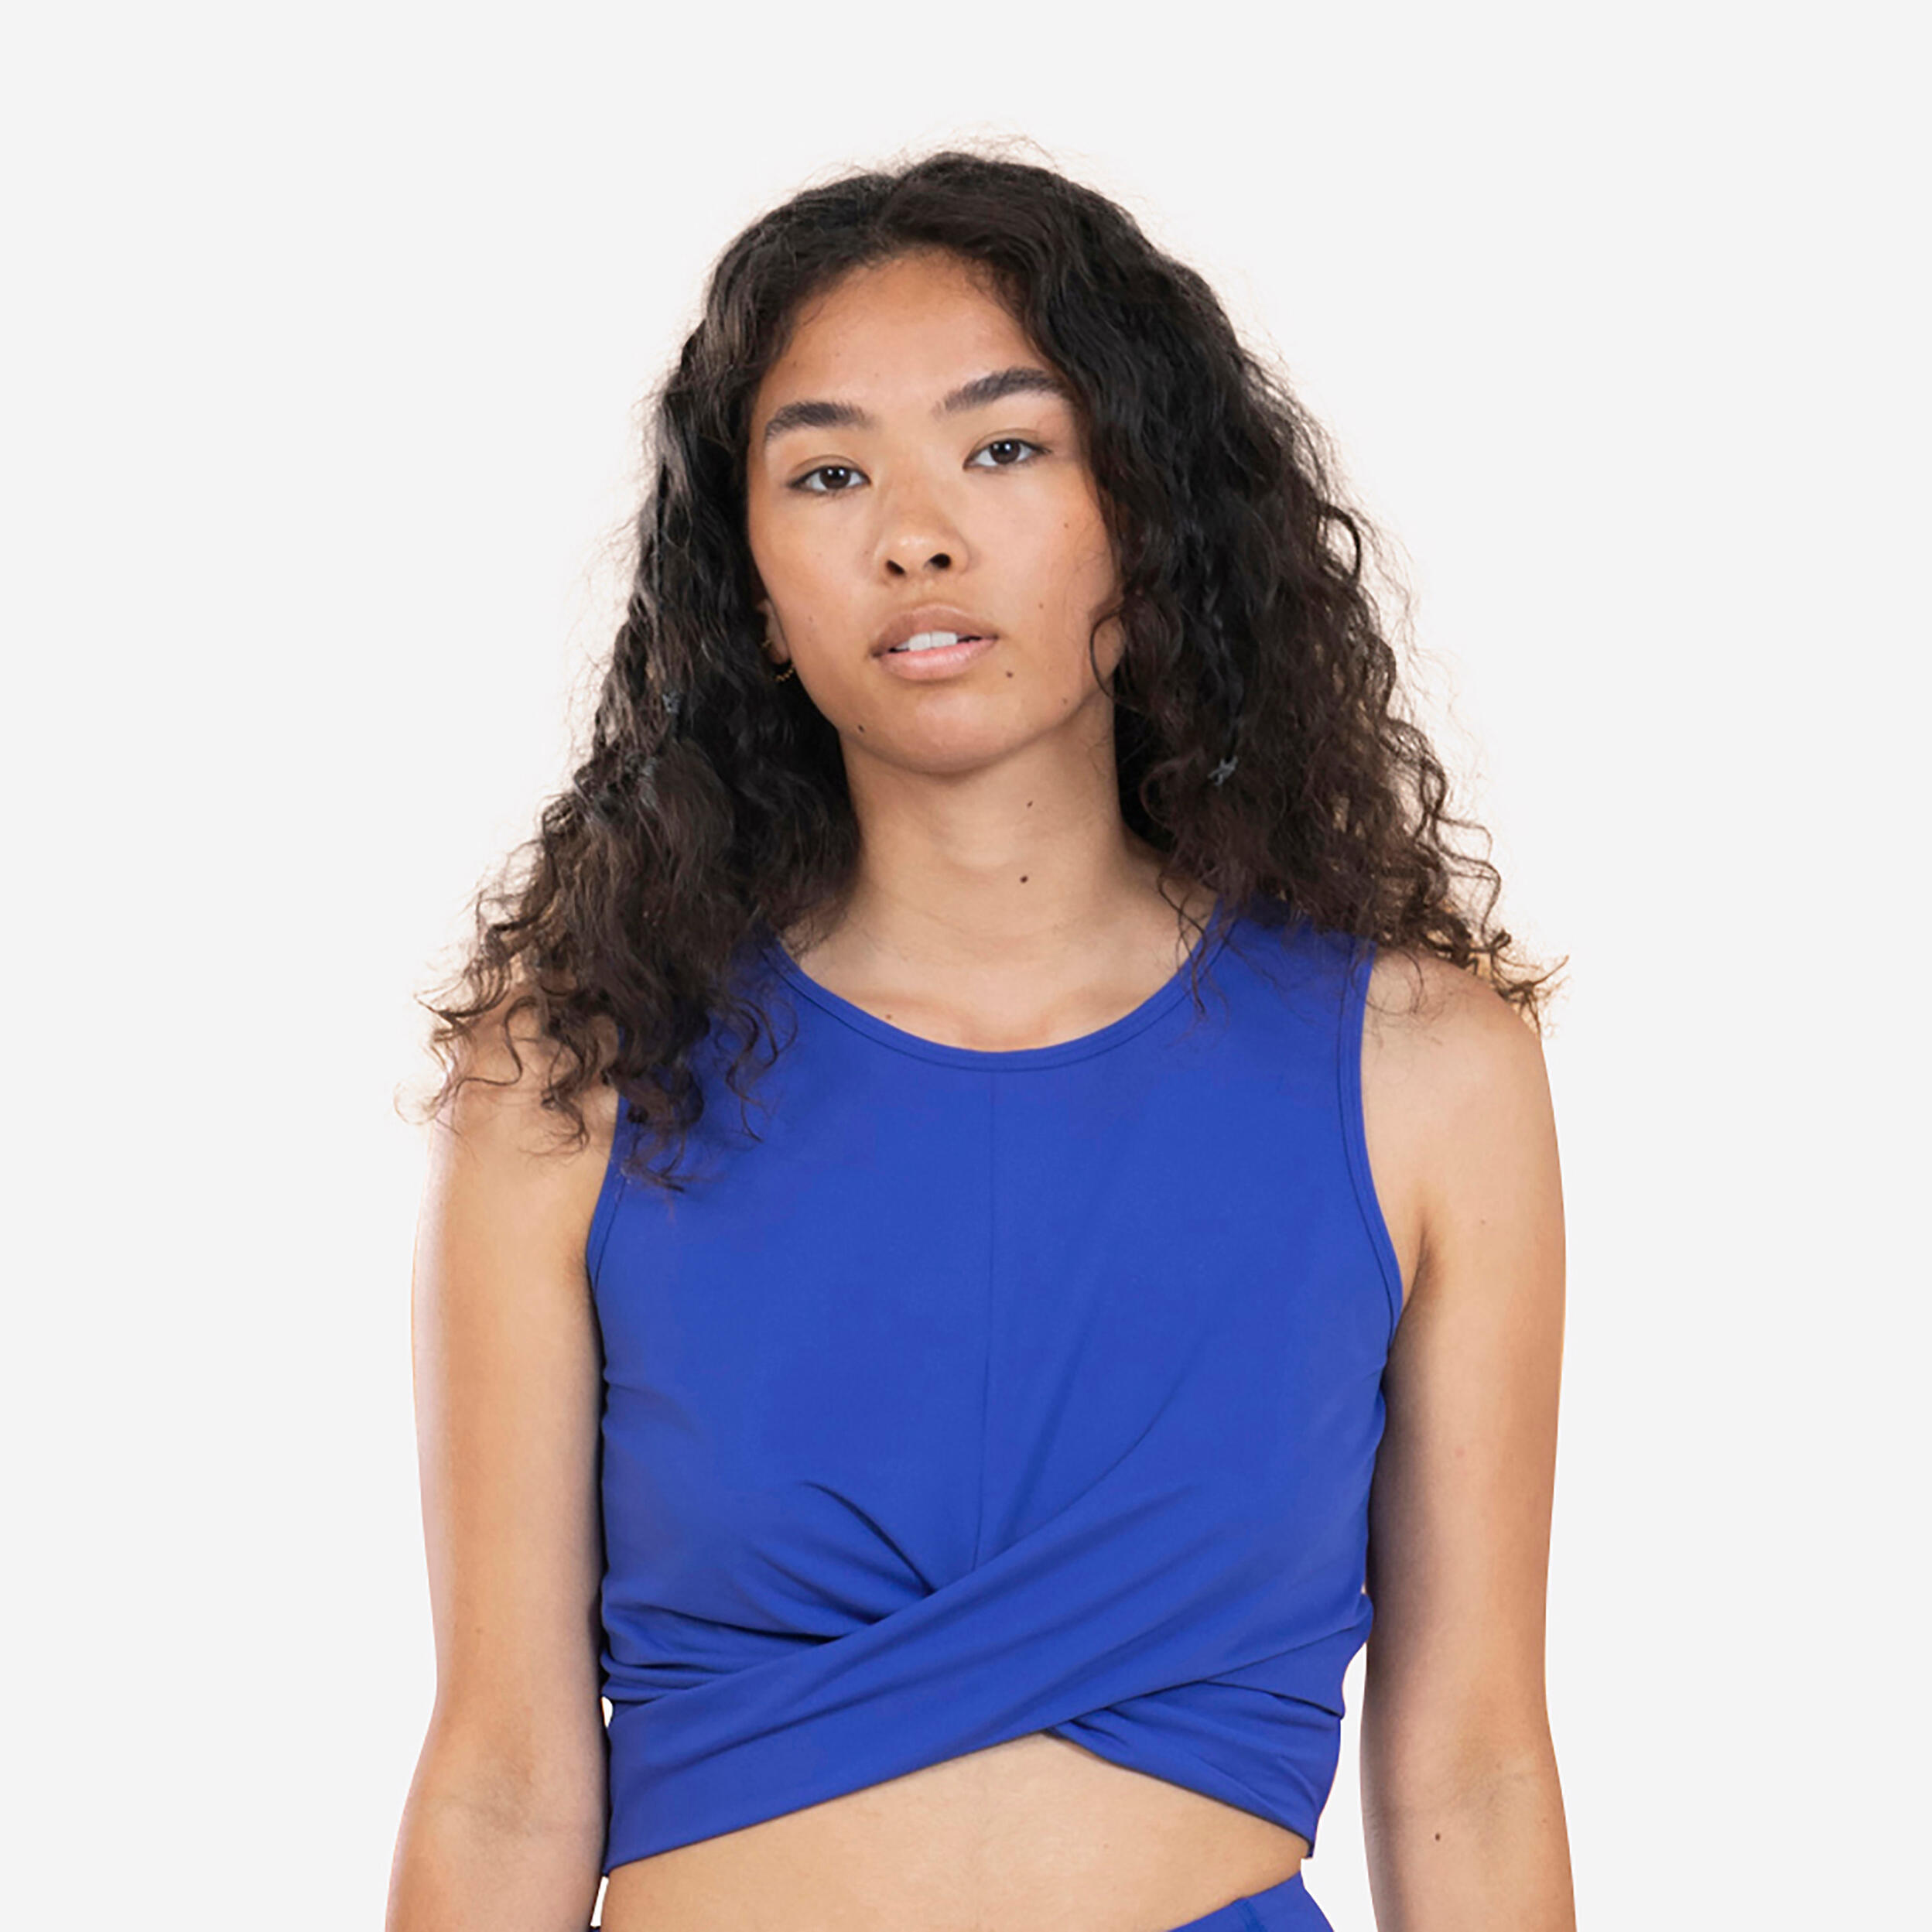 Colanți Yoga Premium Albastru Damă Albastru  Imbracaminte Yoga Femei